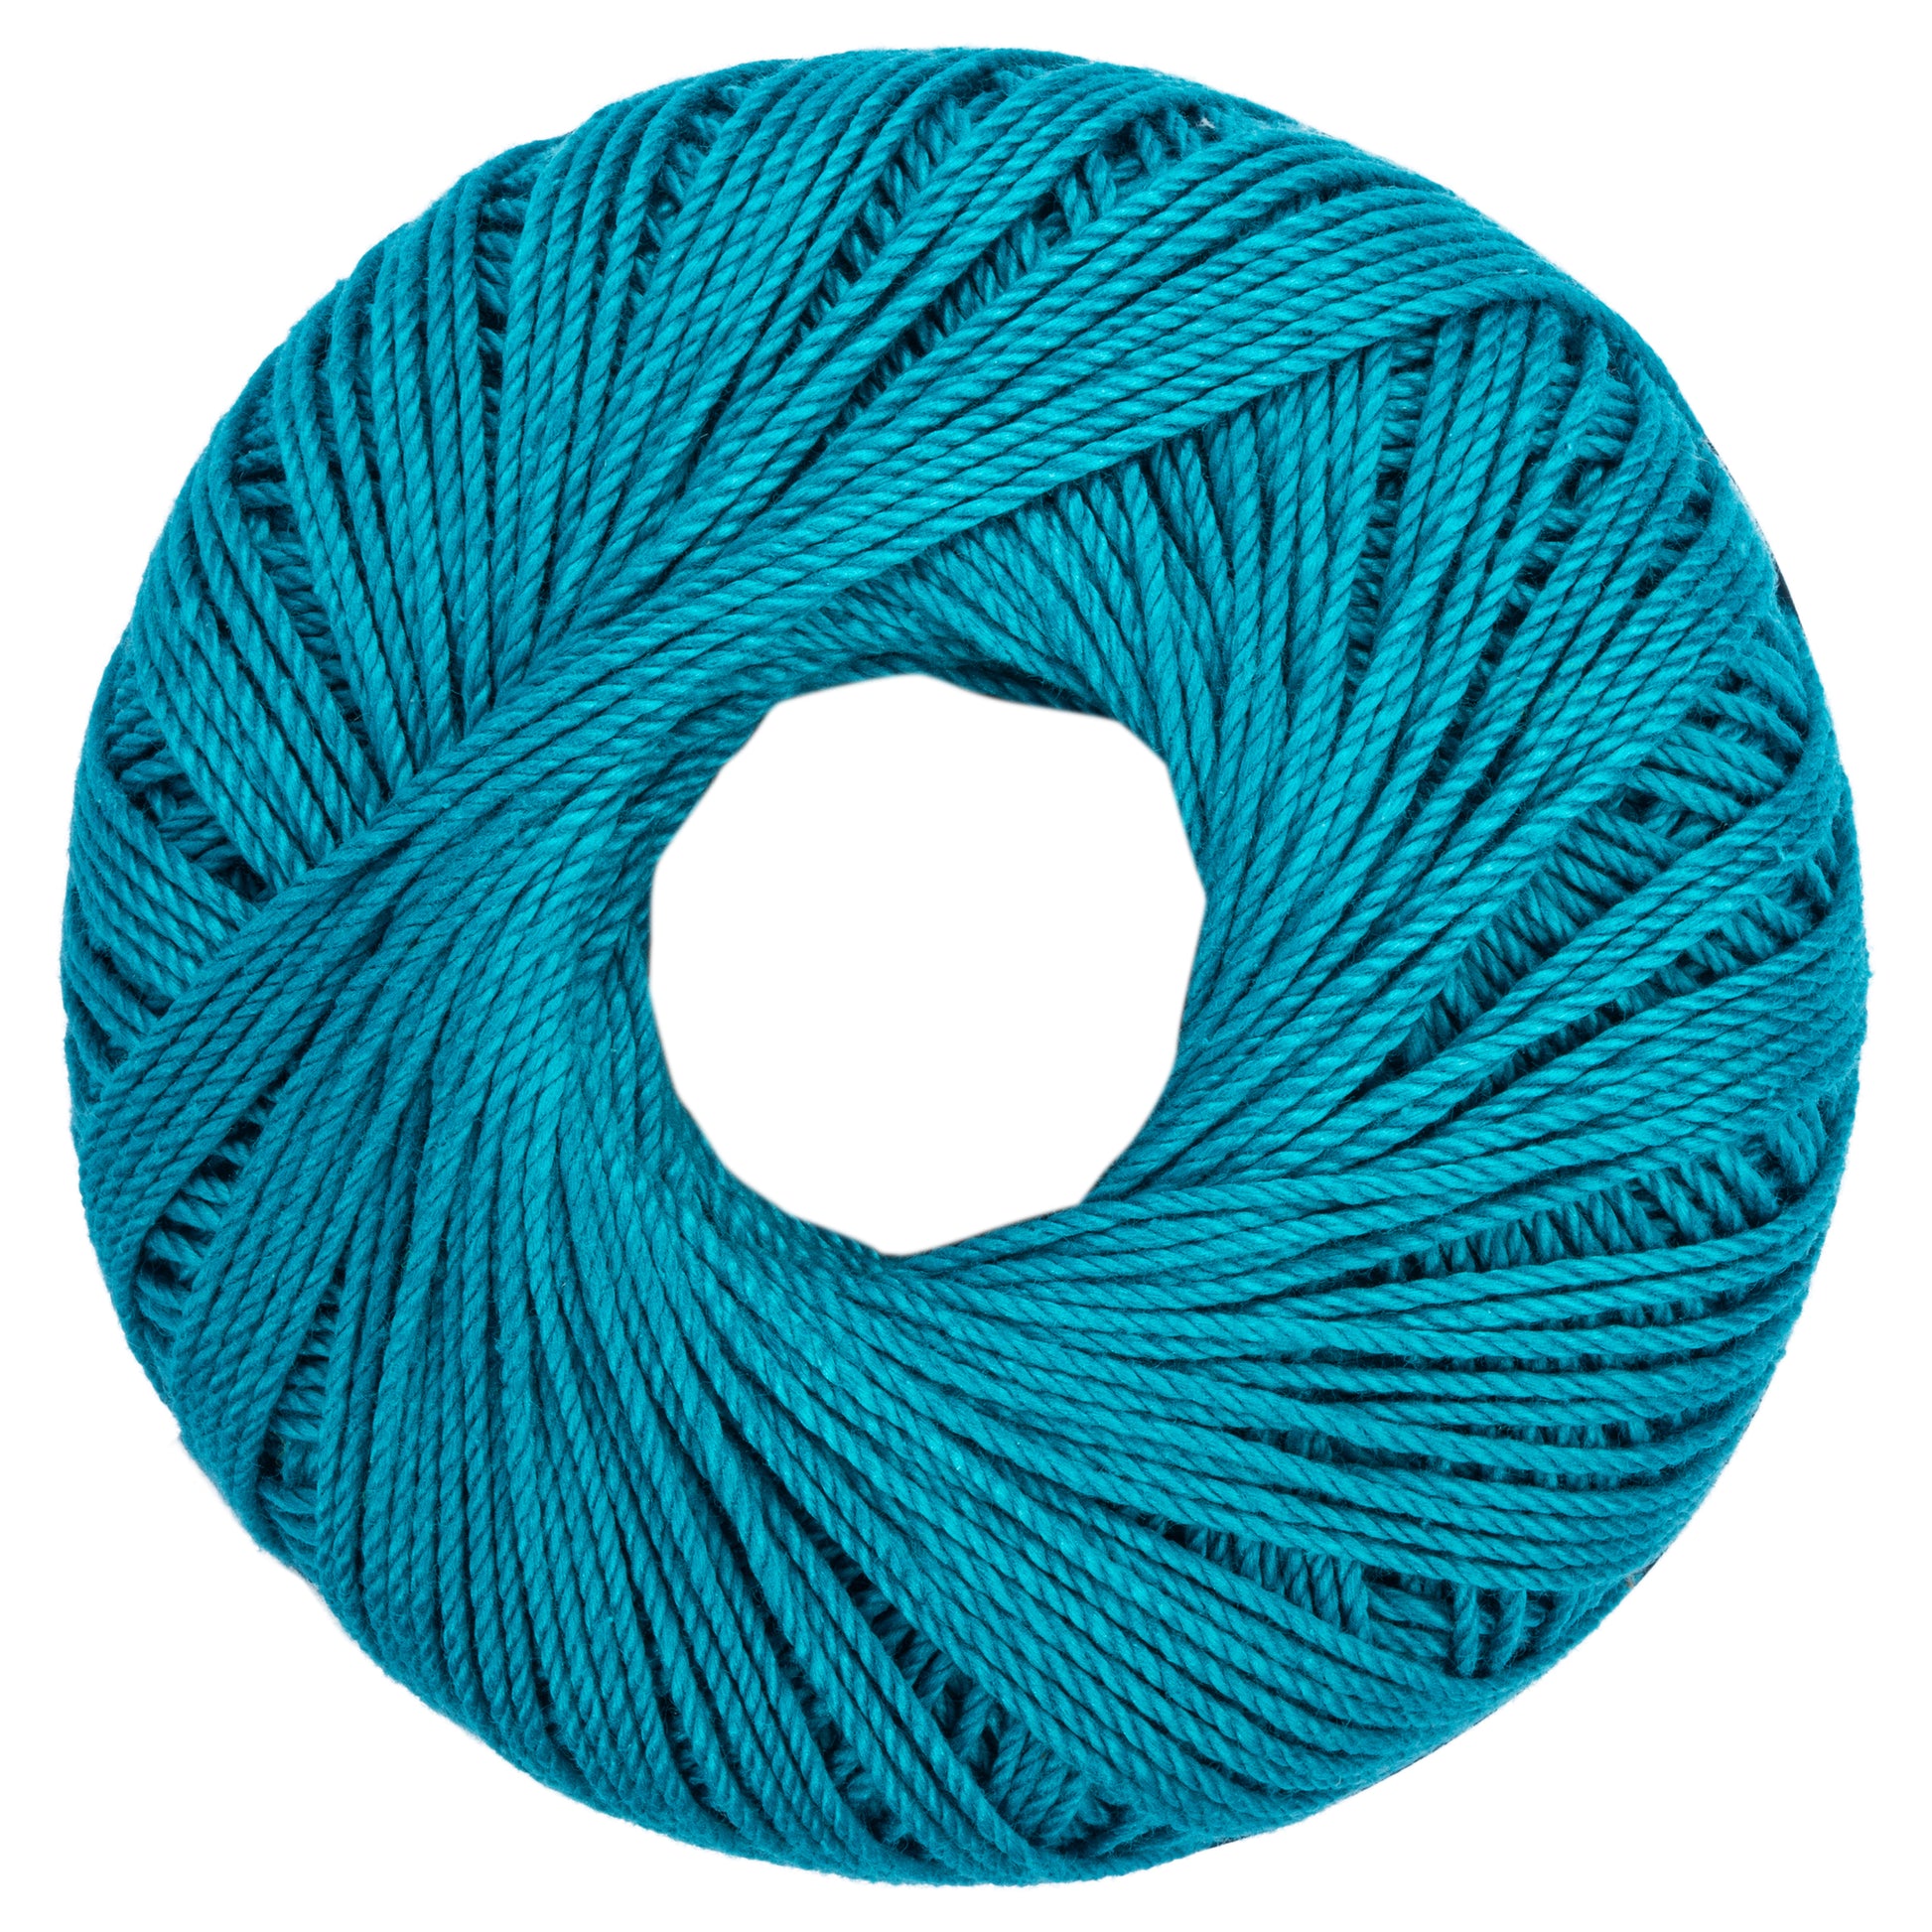 Aunt Lydia's Fashion Crochet Thread Size 3 Colors - Plum Warm Blue